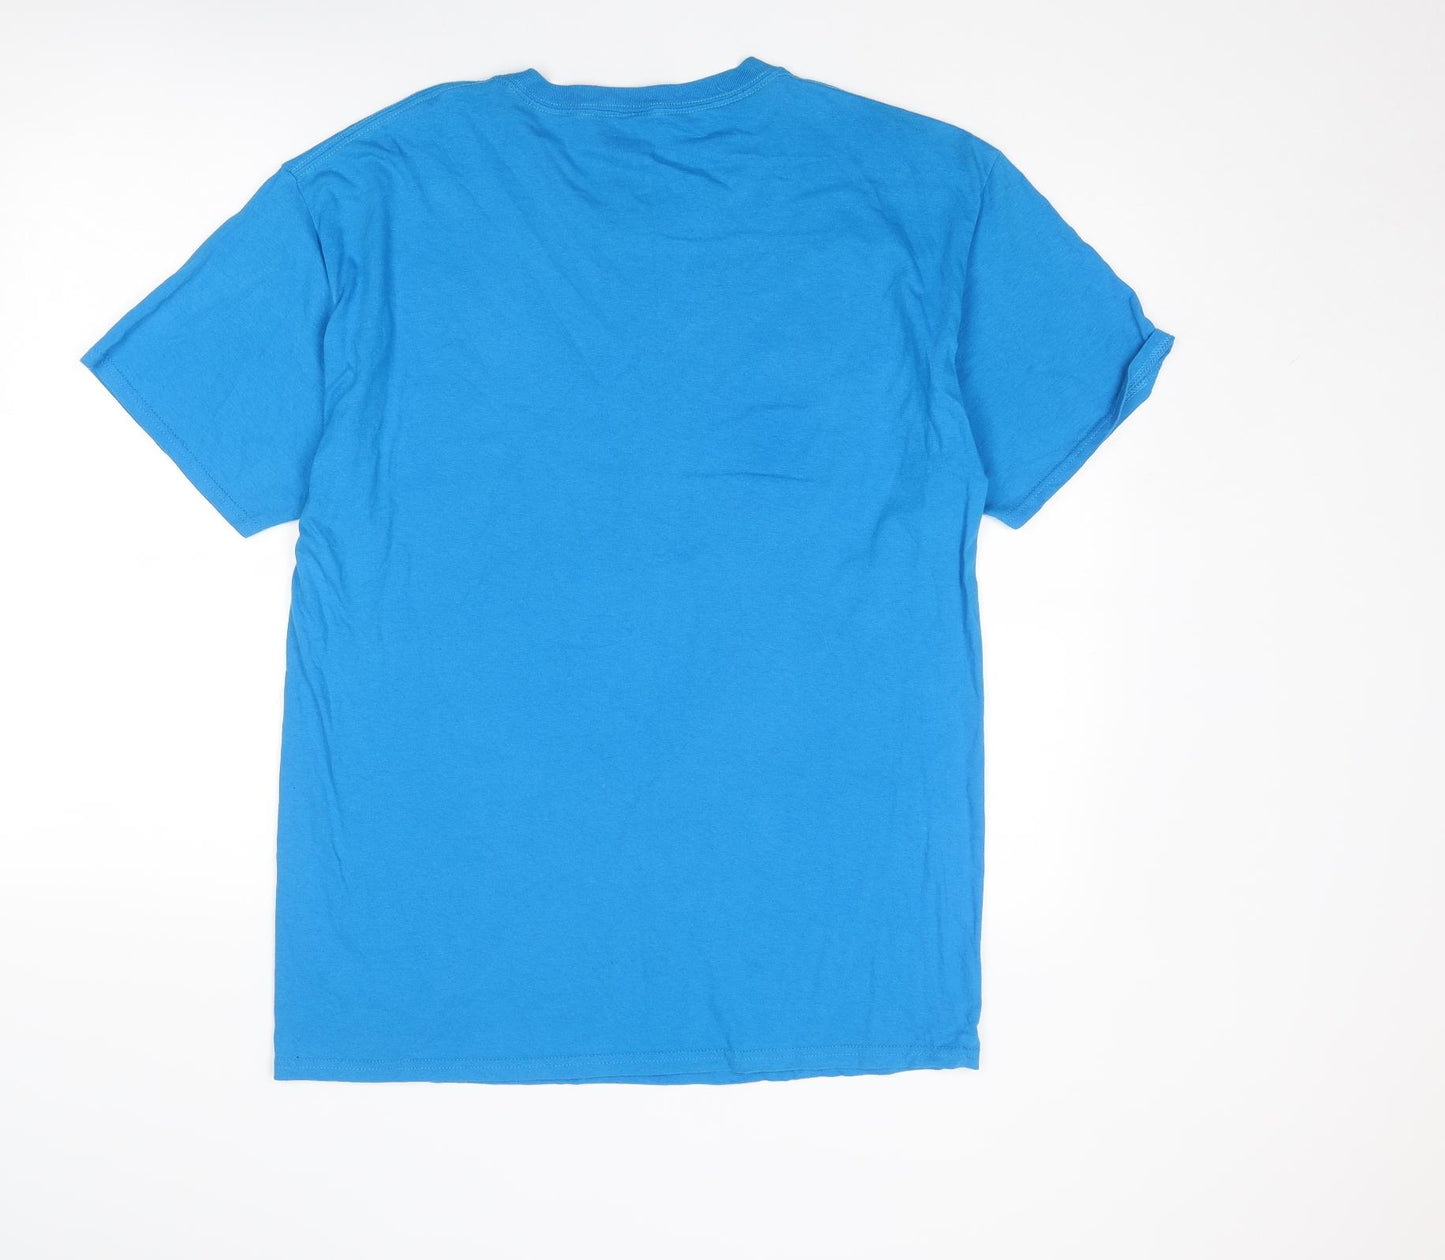 Adventure Time Mens Blue Cotton T-Shirt Size L Round Neck